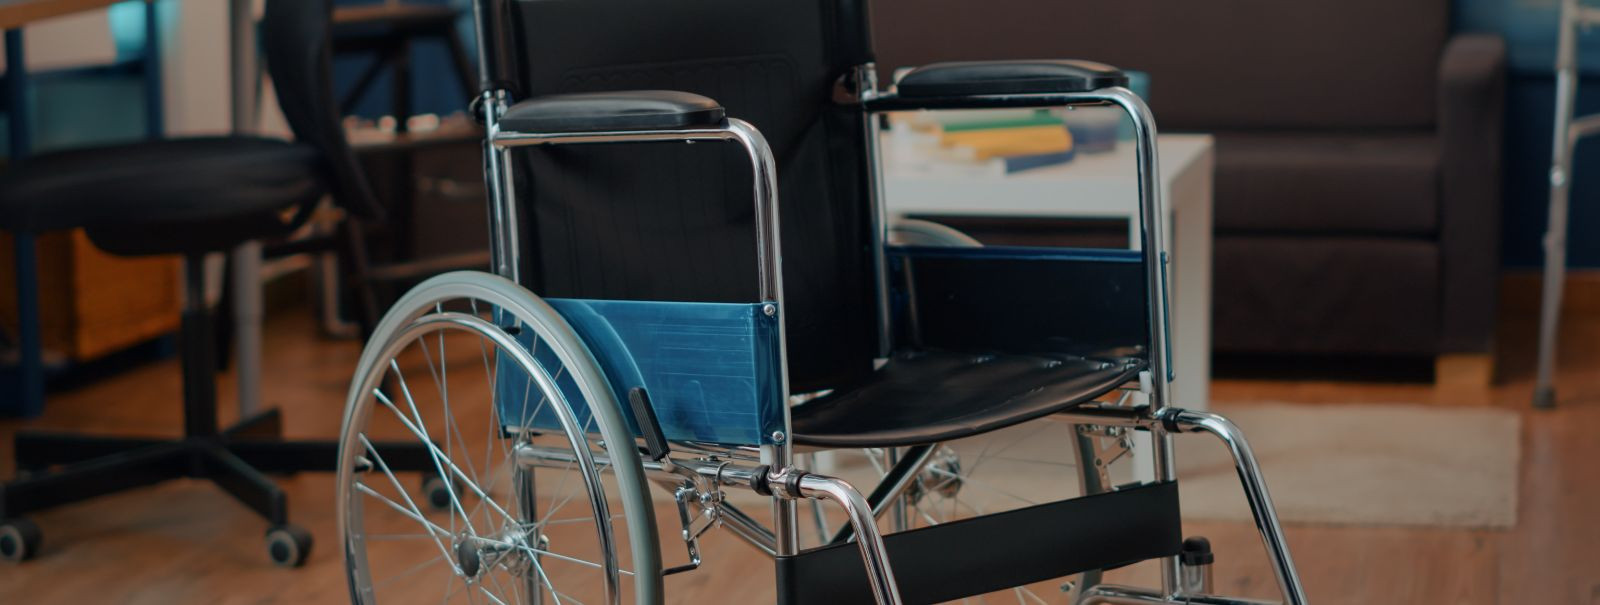 Õige ratastooli valimine algab kasutaja liikumisvajaduste põhjaliku ...